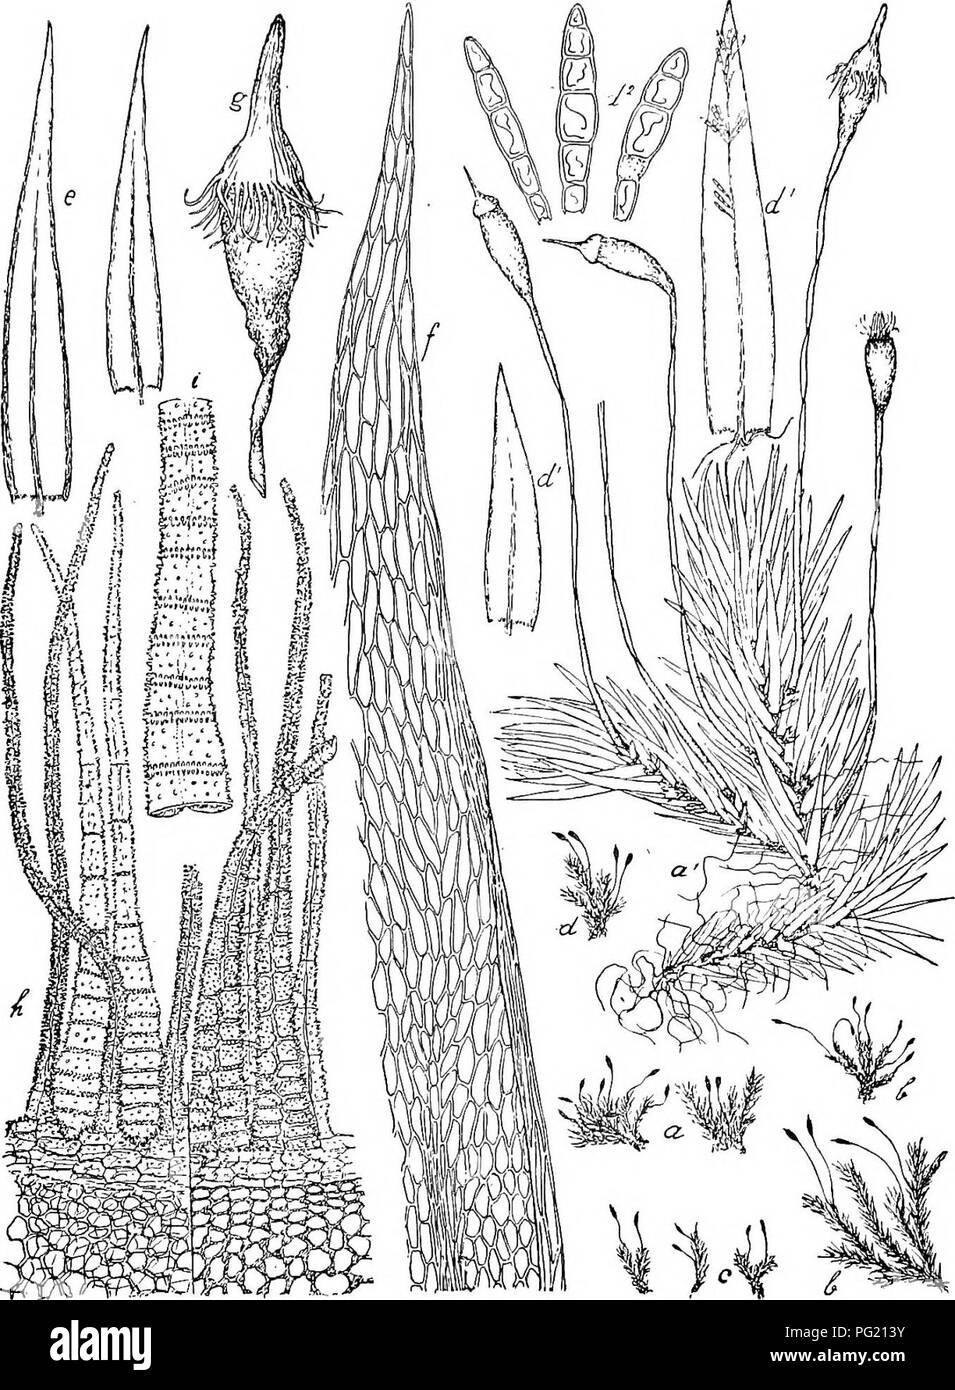 . Flore de Buitenzorg. Botany. 957 Spitze durch 2—5 Reihen gelblicher, lineal-prosenchymatischer Fig. 165.. Dalionia angustifolia Dz. et Mb. a. Habitusbild (natiii-l. Giosse). a', desgl.-J. e. Blatter dei-/. typica ^^. b. Habitusbild dei' vav. (3. Imgipedunculata. f. Blattspitze -^-p^. c. Habitusbild der izx. 7. strictifoUa. g. Kapsel °. d. Habitusbild der var S. gemmiphylla. h. Peristom dorsal uud ventral gesehen —^ d^. Blatter mit Brutkorpern der vor. -J. '/• '• Peristomschenkel ventral gesehen ^7-^- d'^. Brutkorper der var. S. -j—- Zellen gebildet, nacli aussen umgebogen, ganzrandig.. Plea Stock Photo